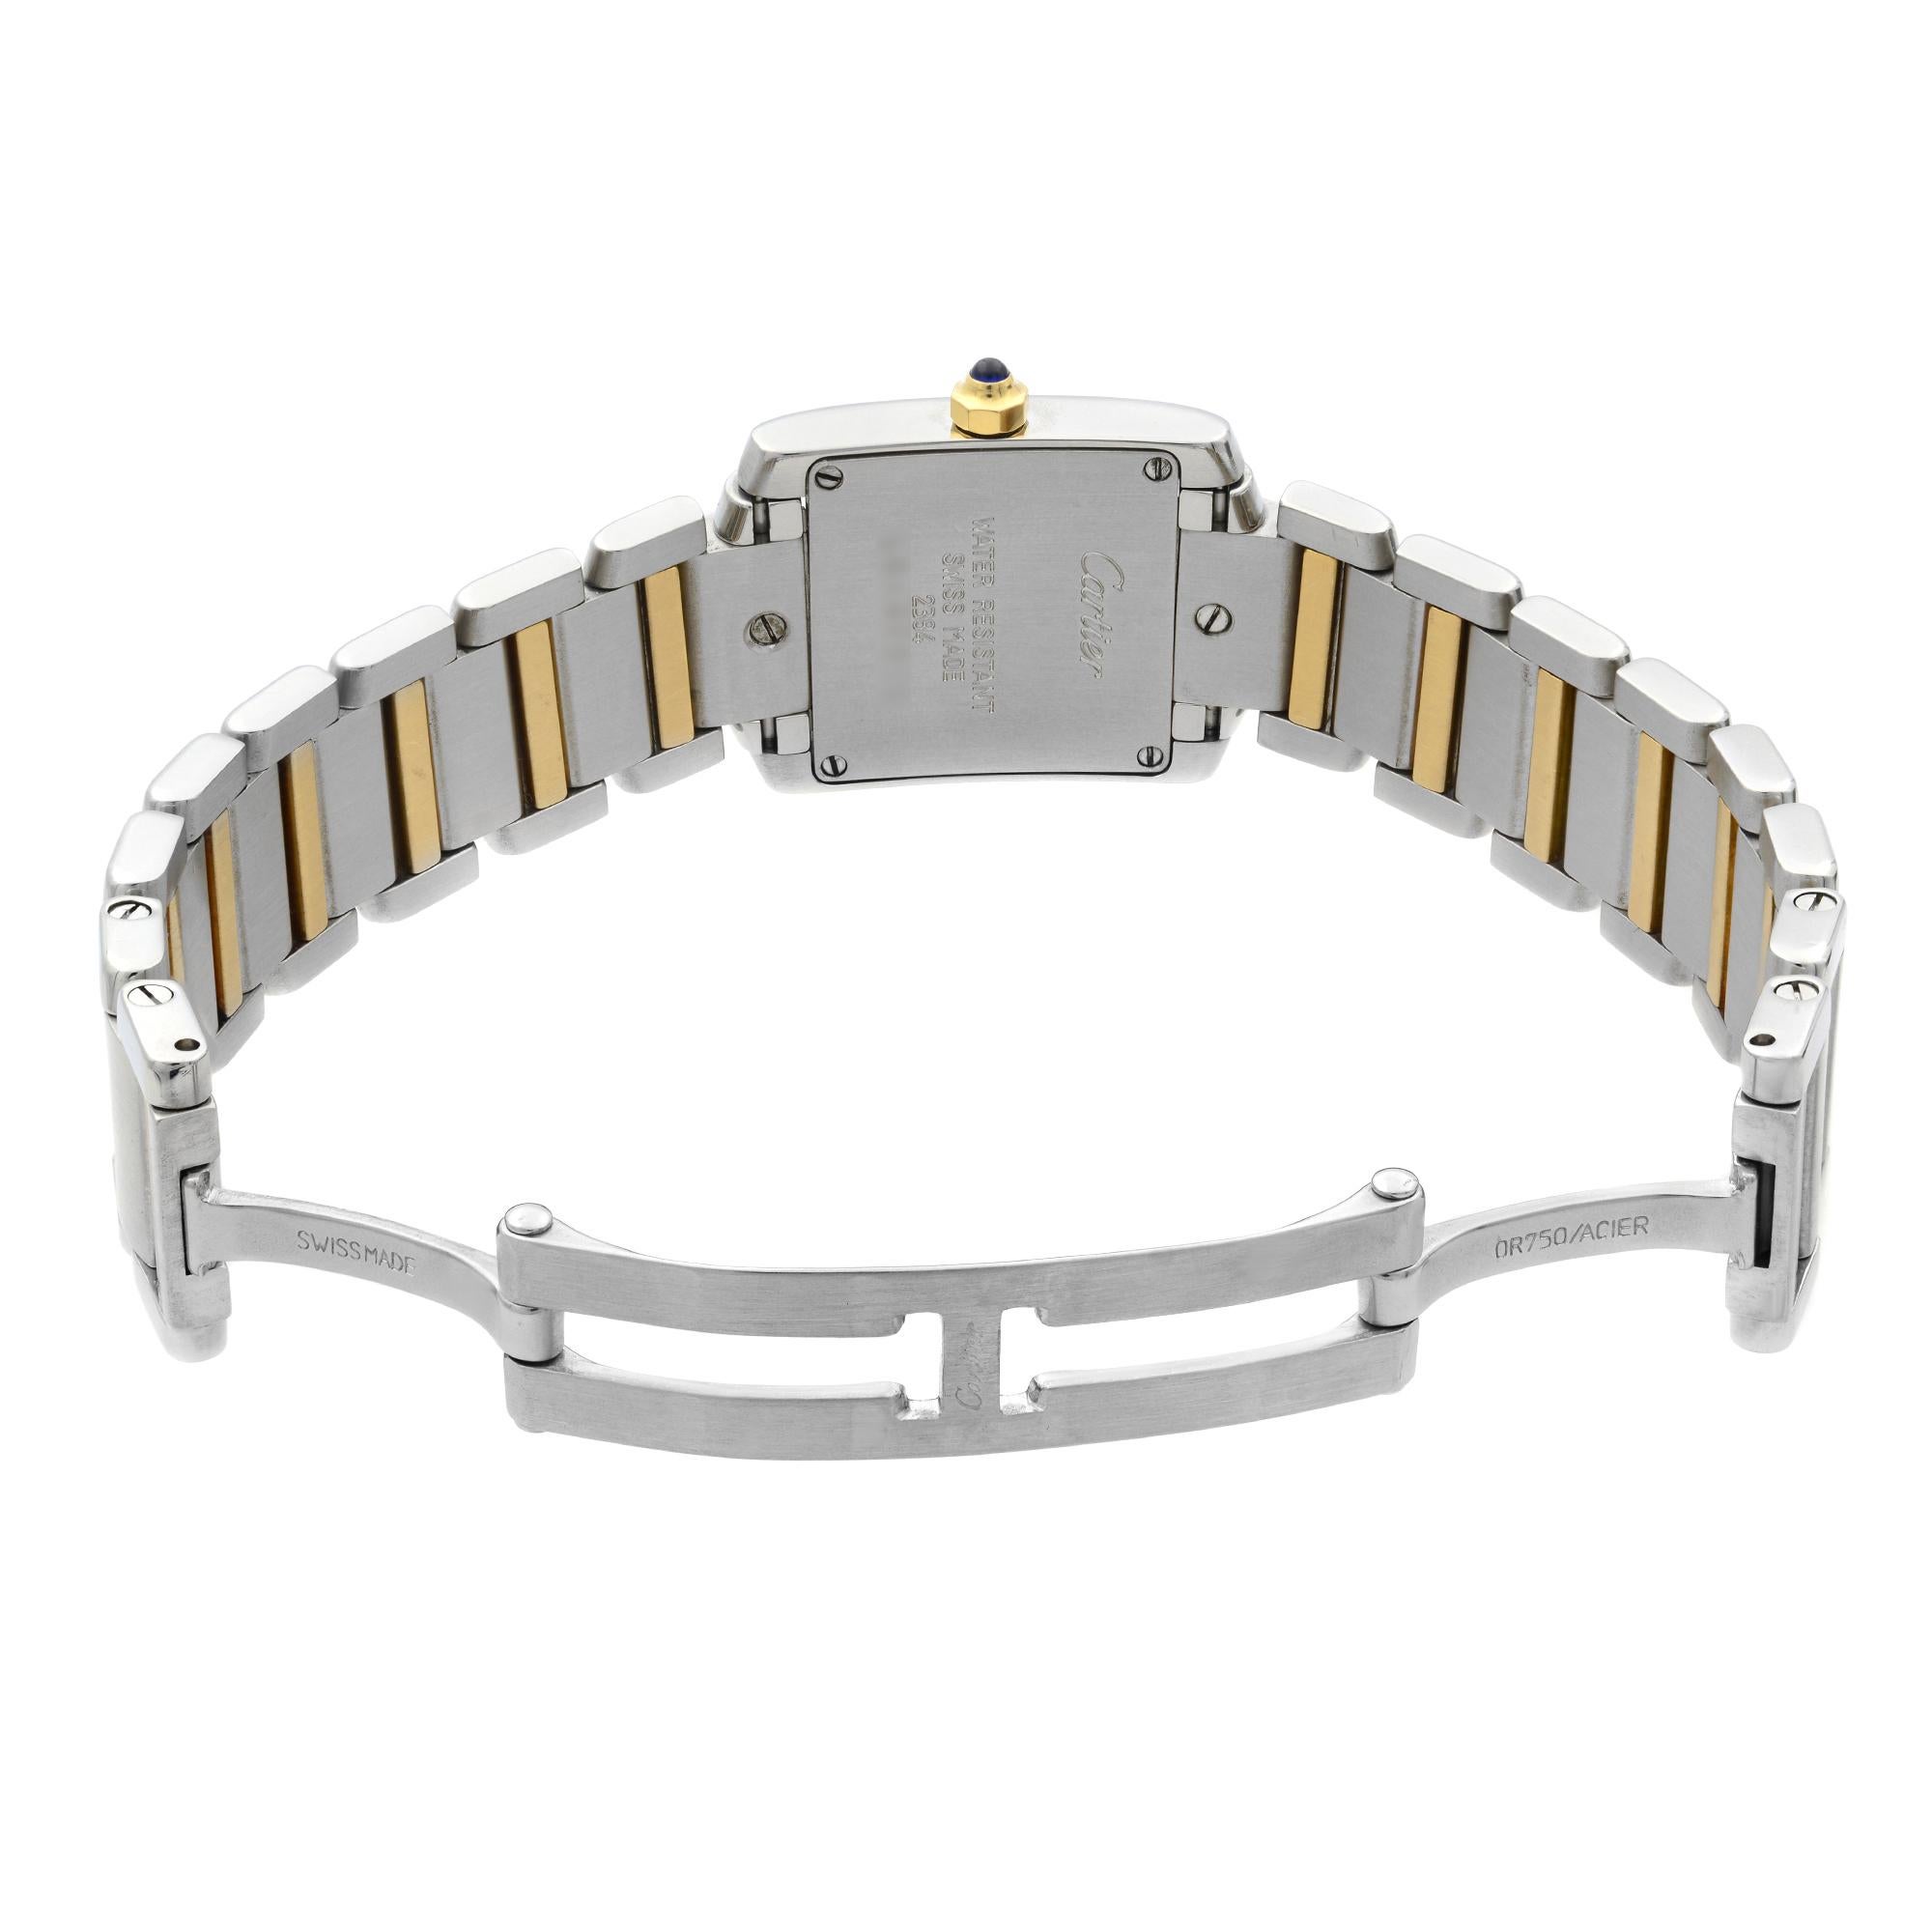 Cartier Tank Francaise 18k Gold Steel Quartz Breige Dial Ladies Watch W51007Q4 1